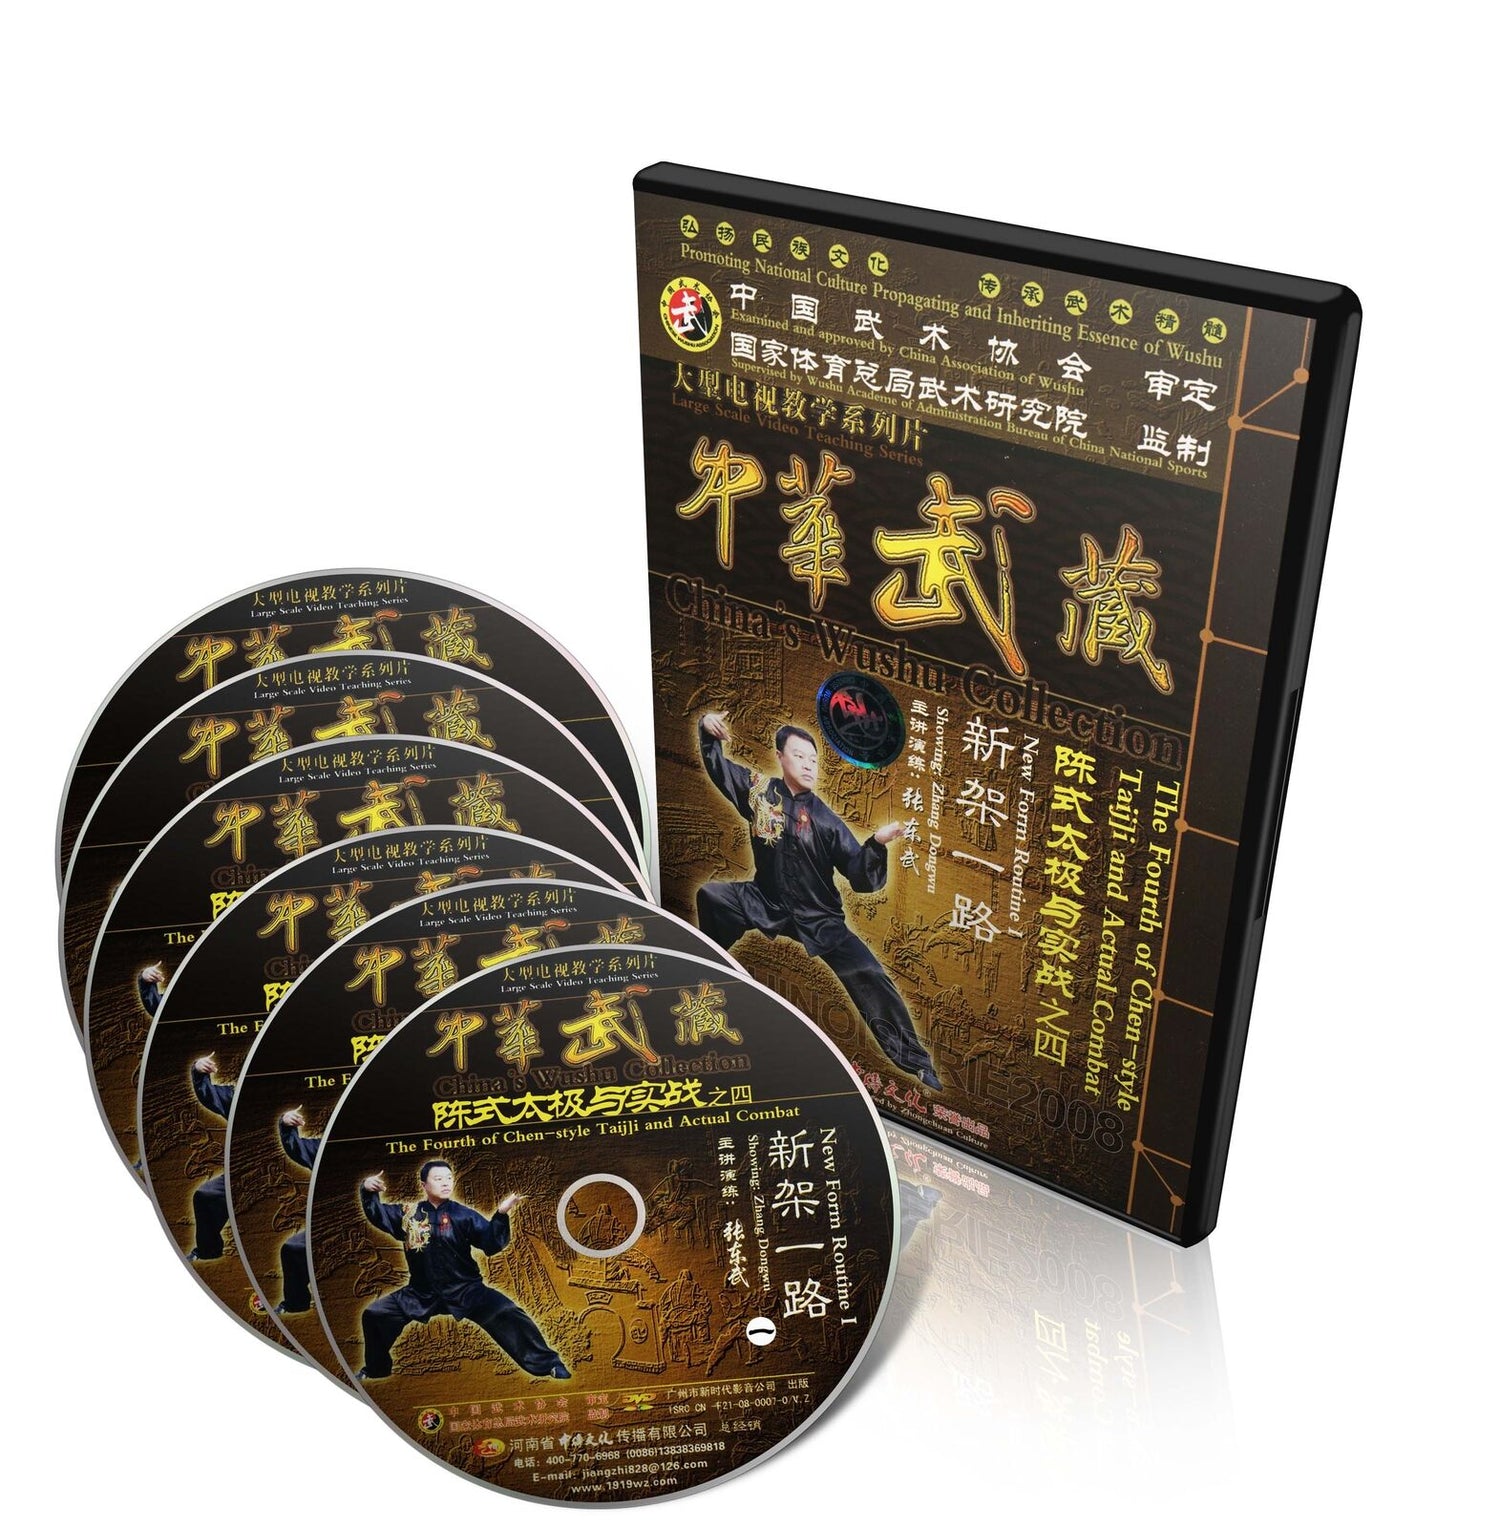 陳式太極拳と実戦 (新形式ルーチン I) DVD 6 枚セット 張東武著